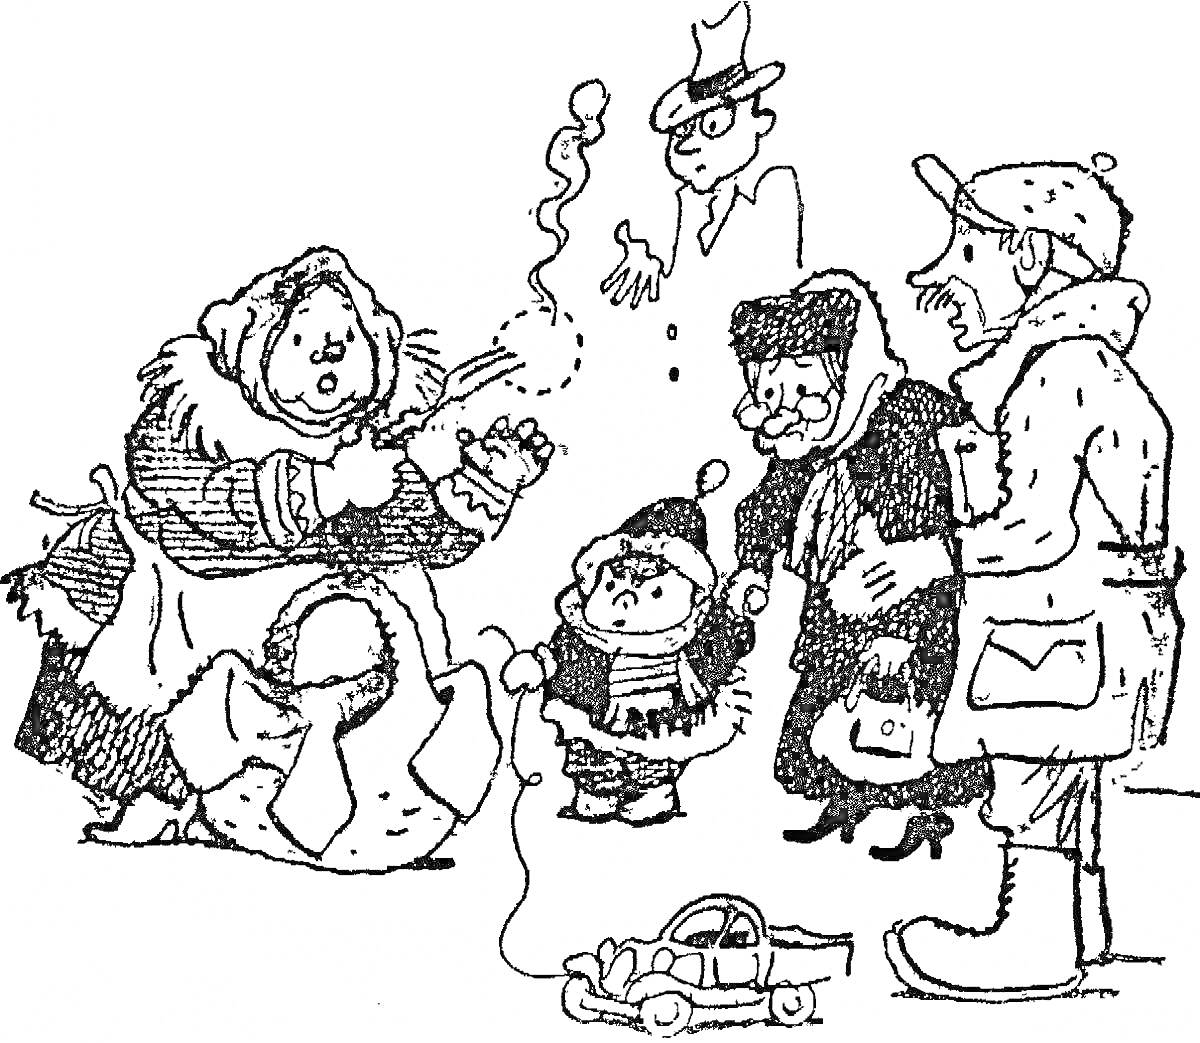 Раскраска Женщина в длинном платье с платком на голове, выпускающая из рук дым, ребенок в шапке и шарфе рядом с игрушечной машинкой, двое пожилых людей в шапках и шарфах, мужчина в кепке, силуэт с очками и шляпой в воздухе